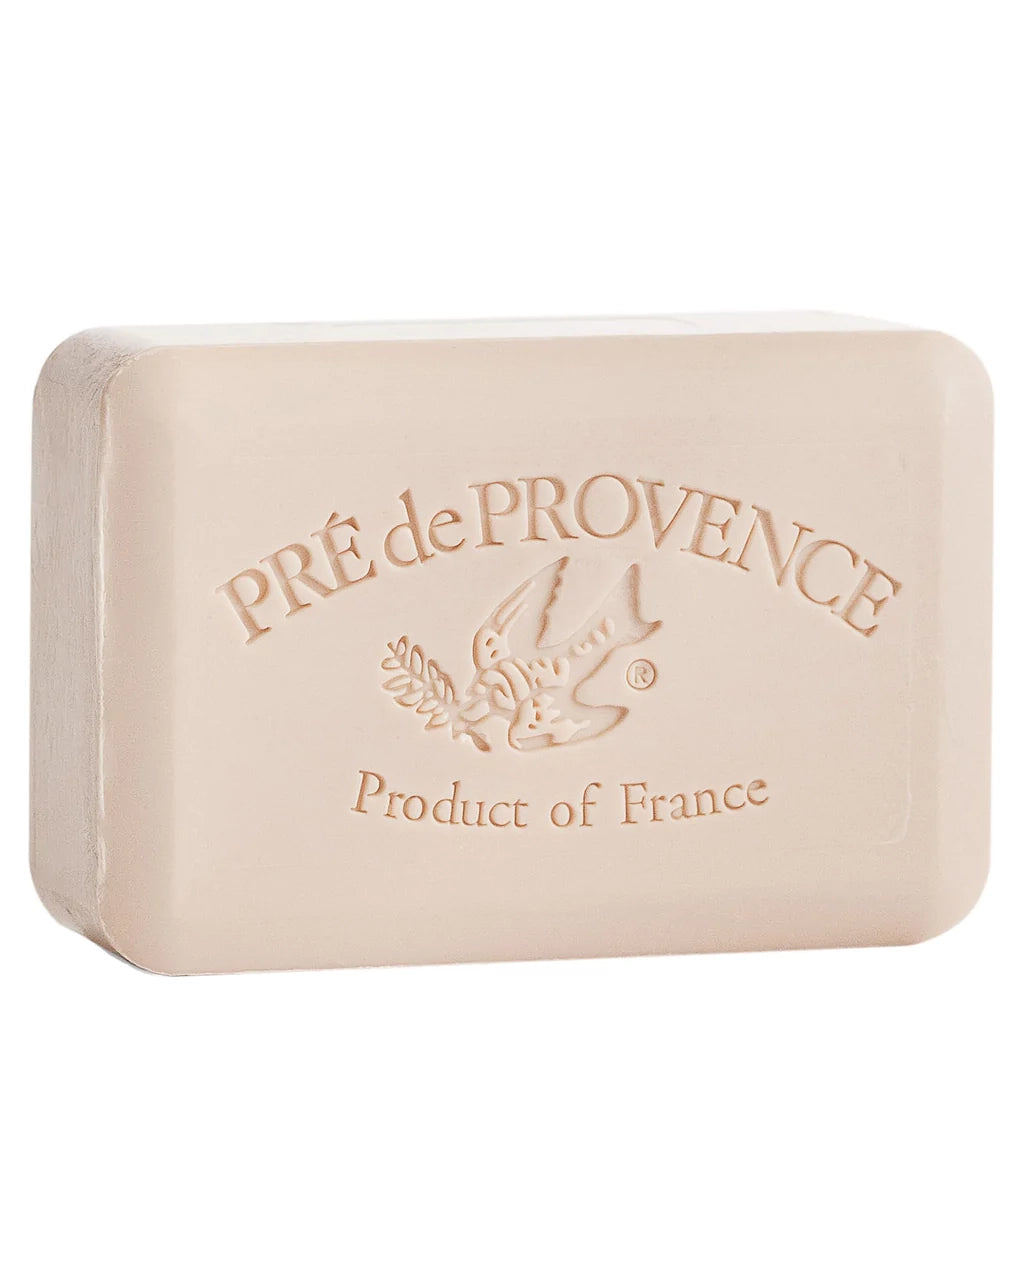 Pre de Provence Shea Butter Enriched Soap - Coconut